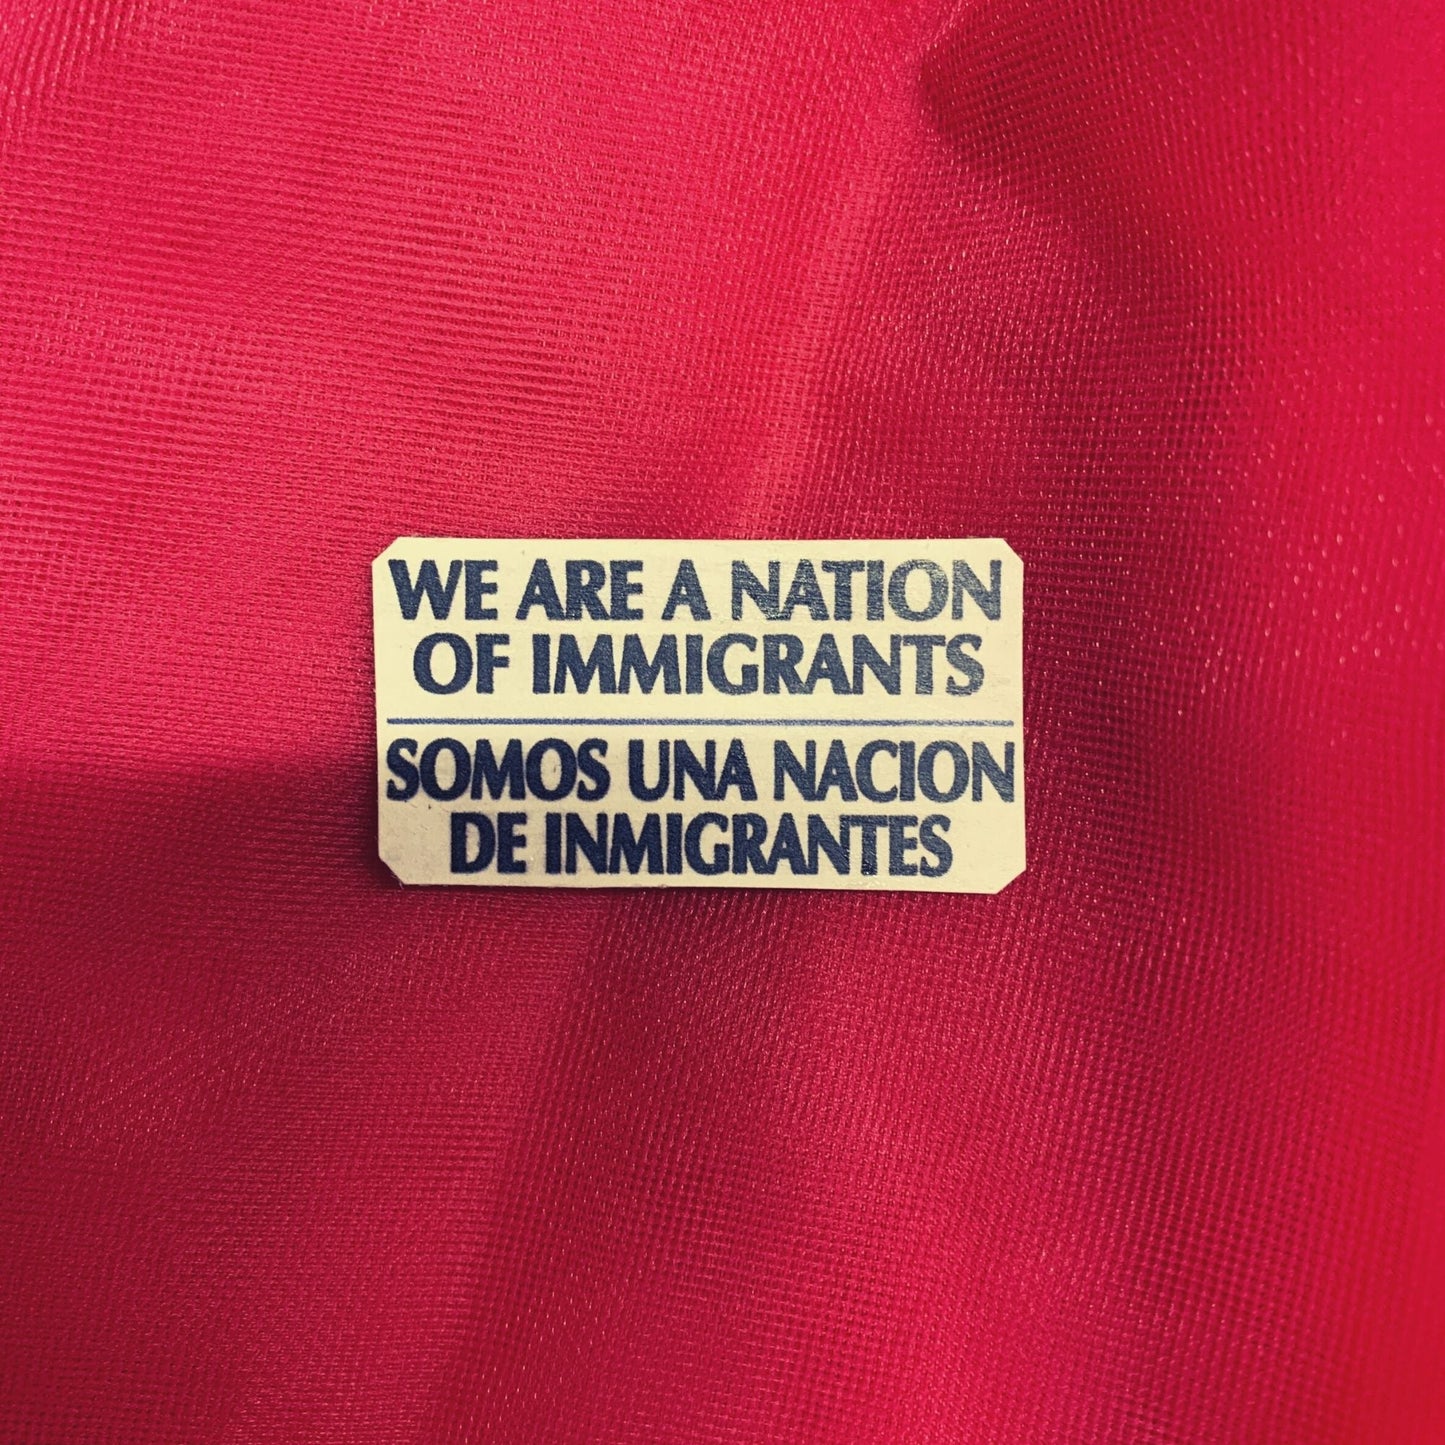 We Are A Nation Of Immigrants/Somos Una Nacion De Immigrantes Handmade Metal Pin